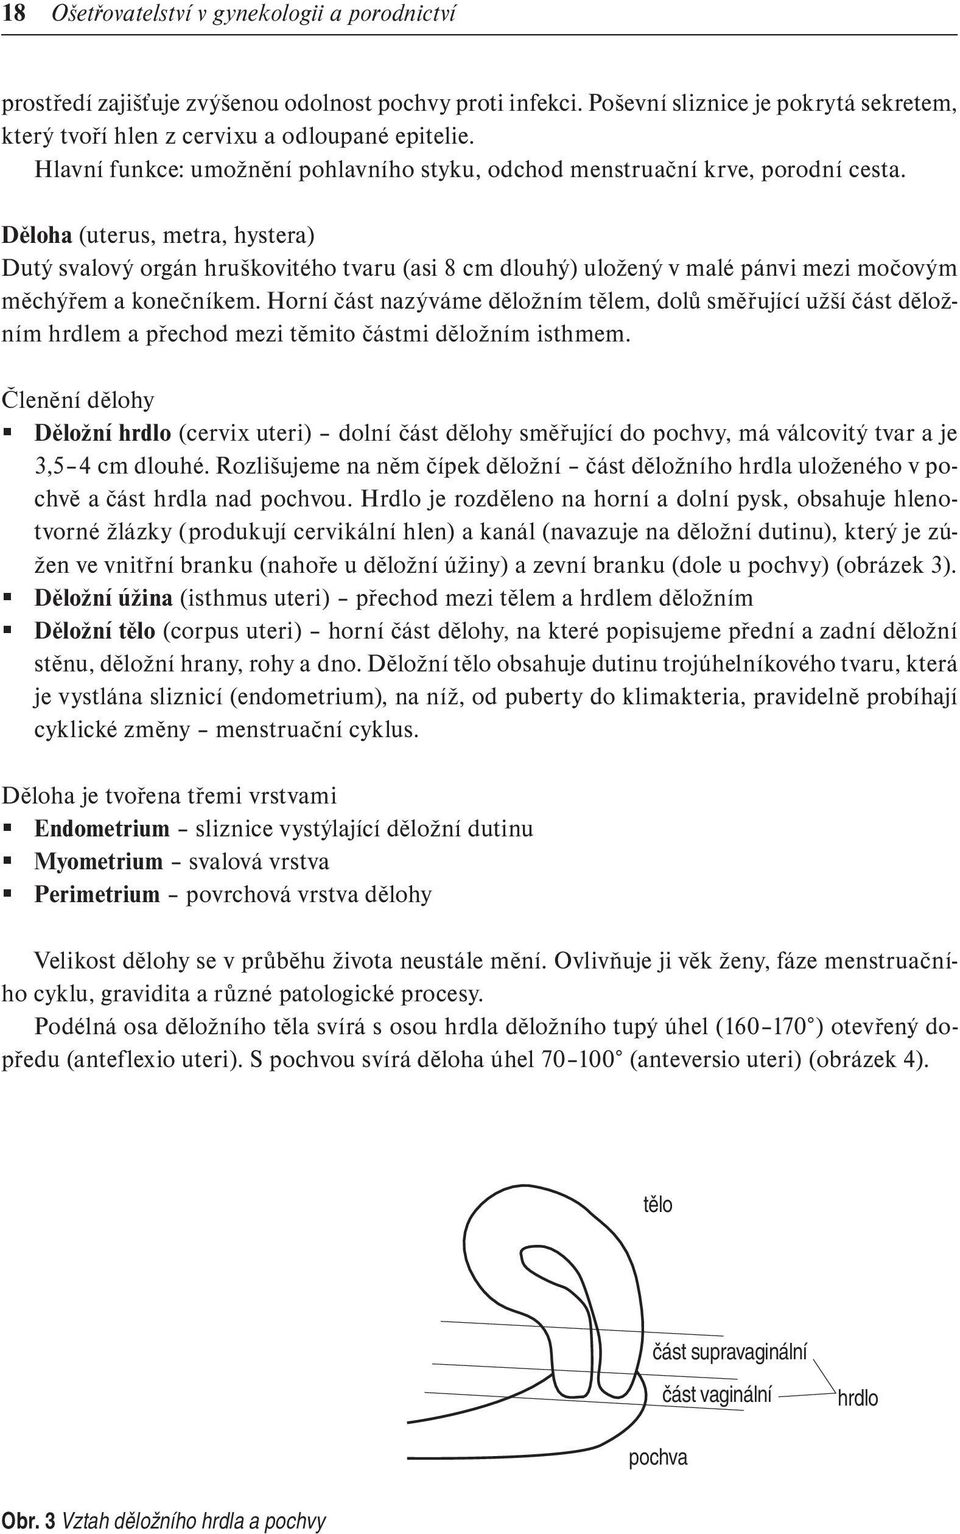 OŠETŘOVATELSTVÍ V GYNEKOLOGII A PORODNICTVÍ Vedoucí autorského kolektivu:  Mgr. Lenka Slezáková, Ph.D. - PDF Stažení zdarma